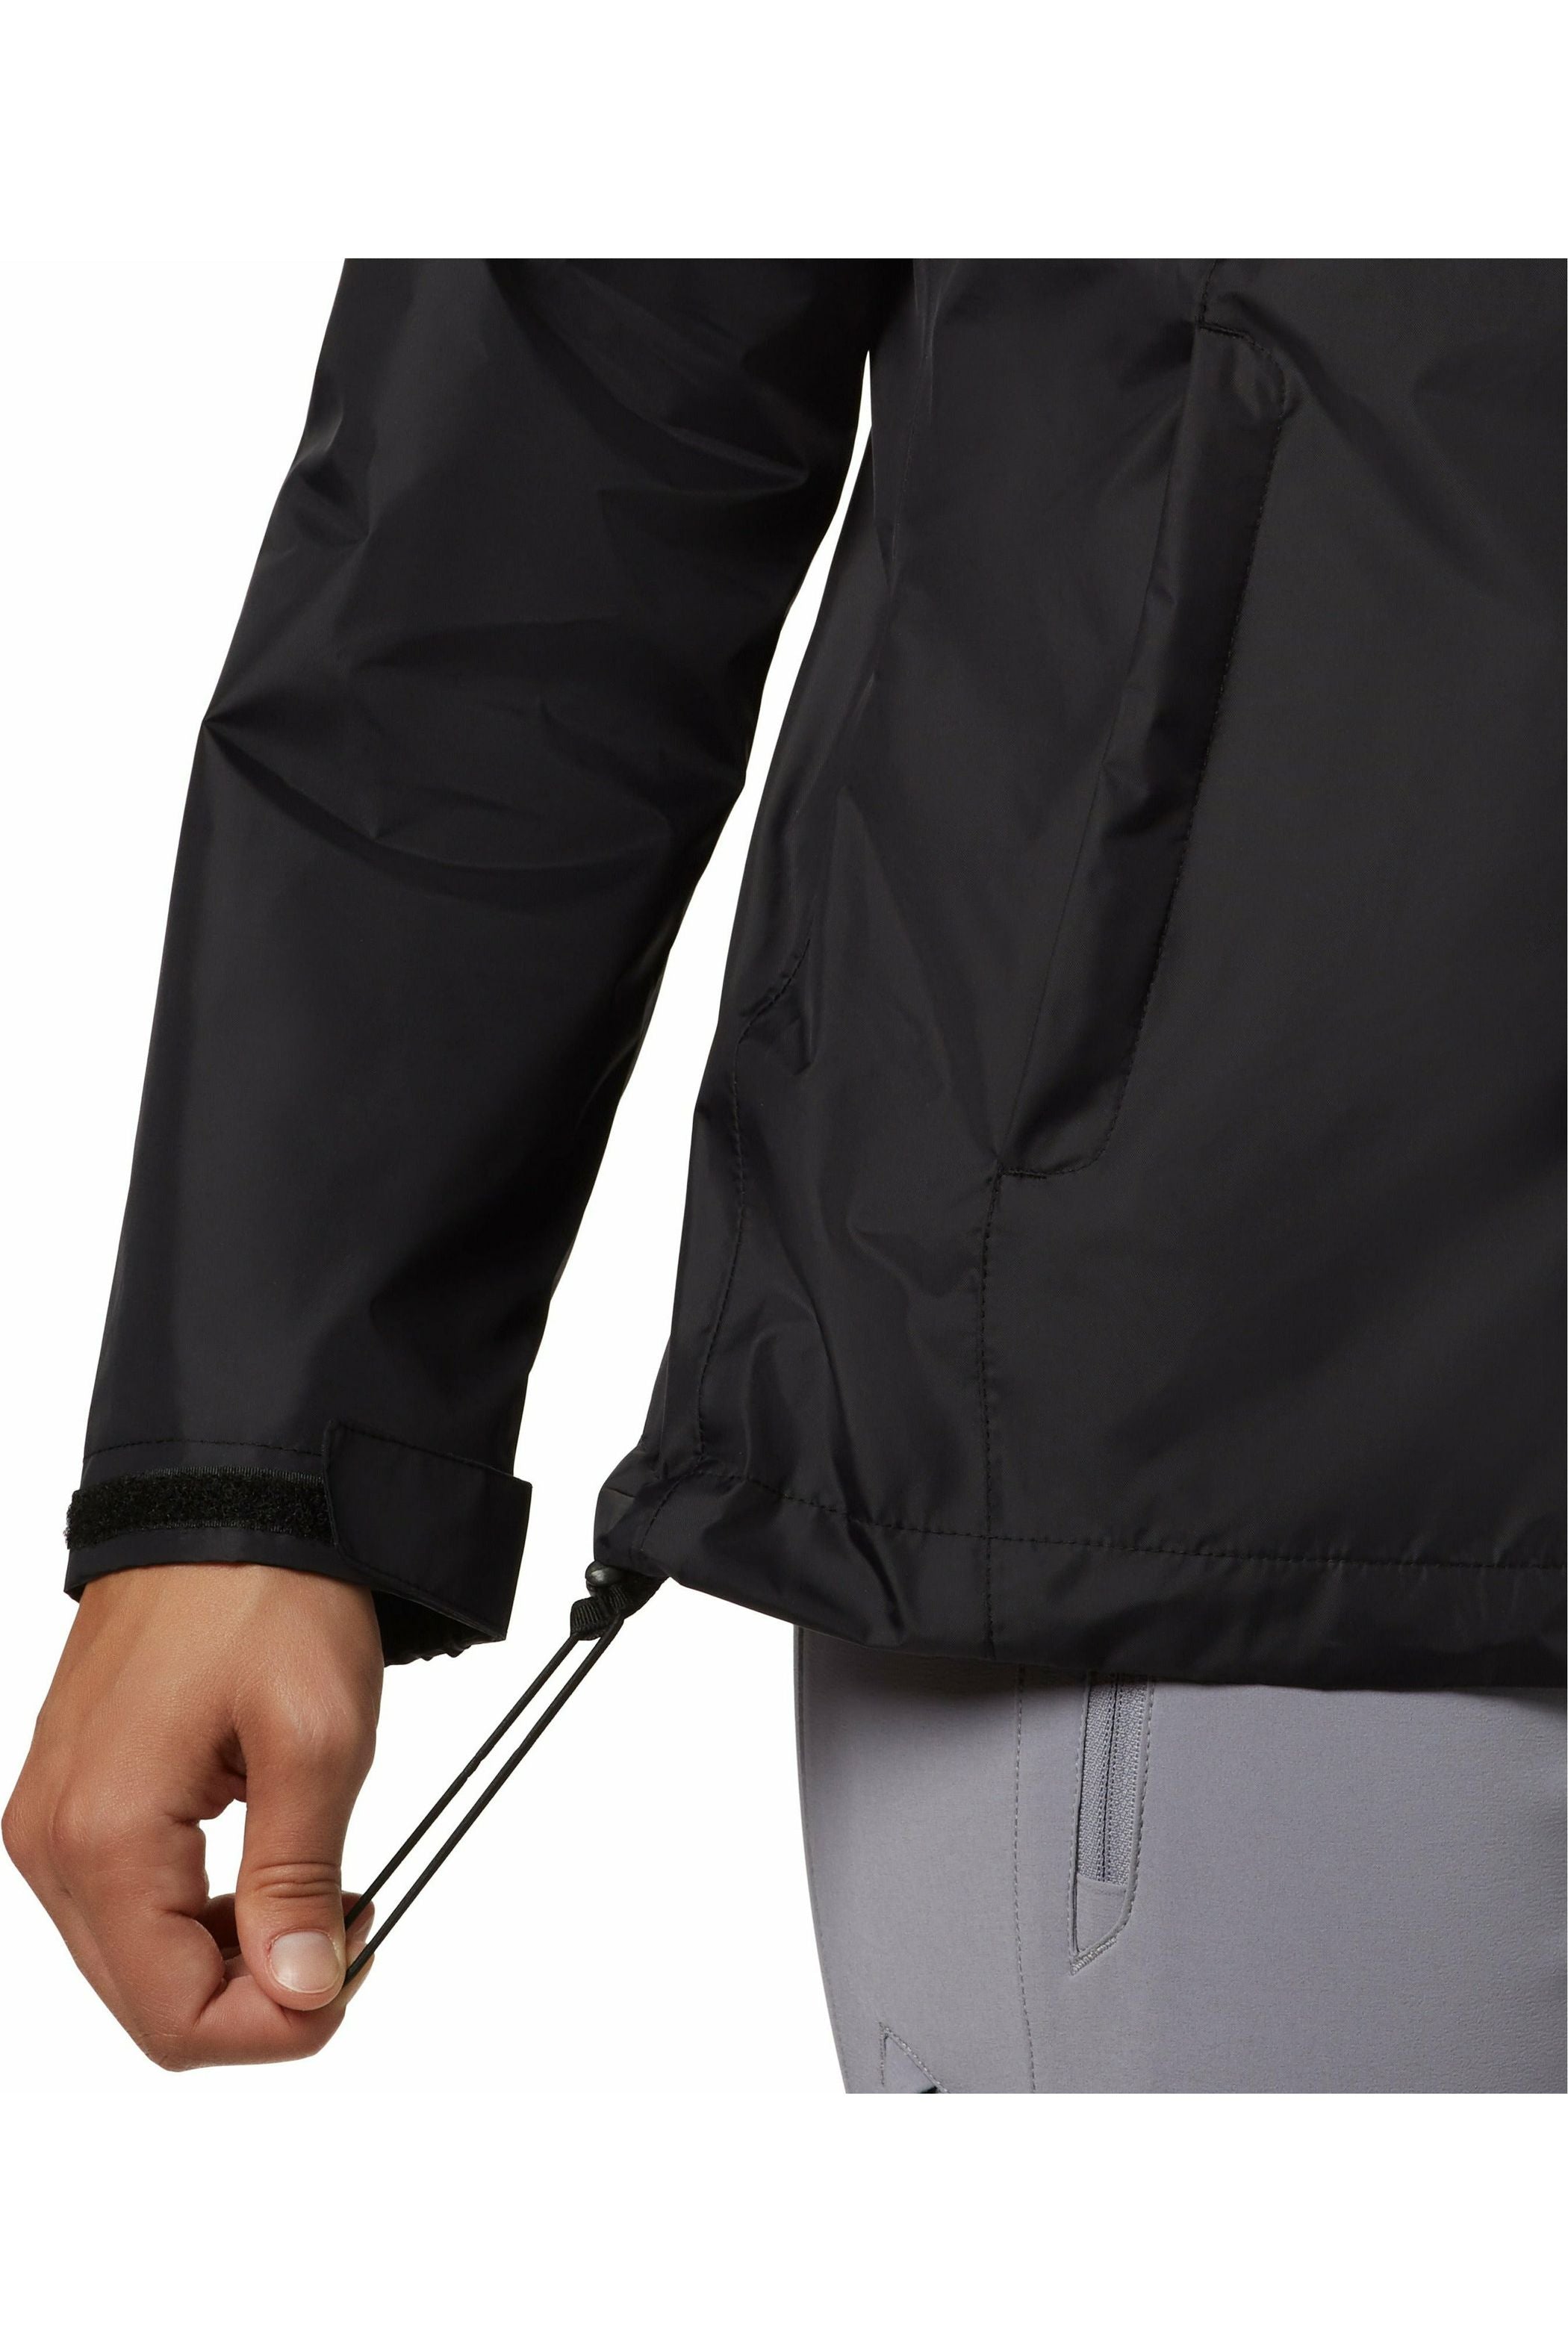 Columbia Arcadia Waterproof Jacket - Style 1534111010, adjustable hem